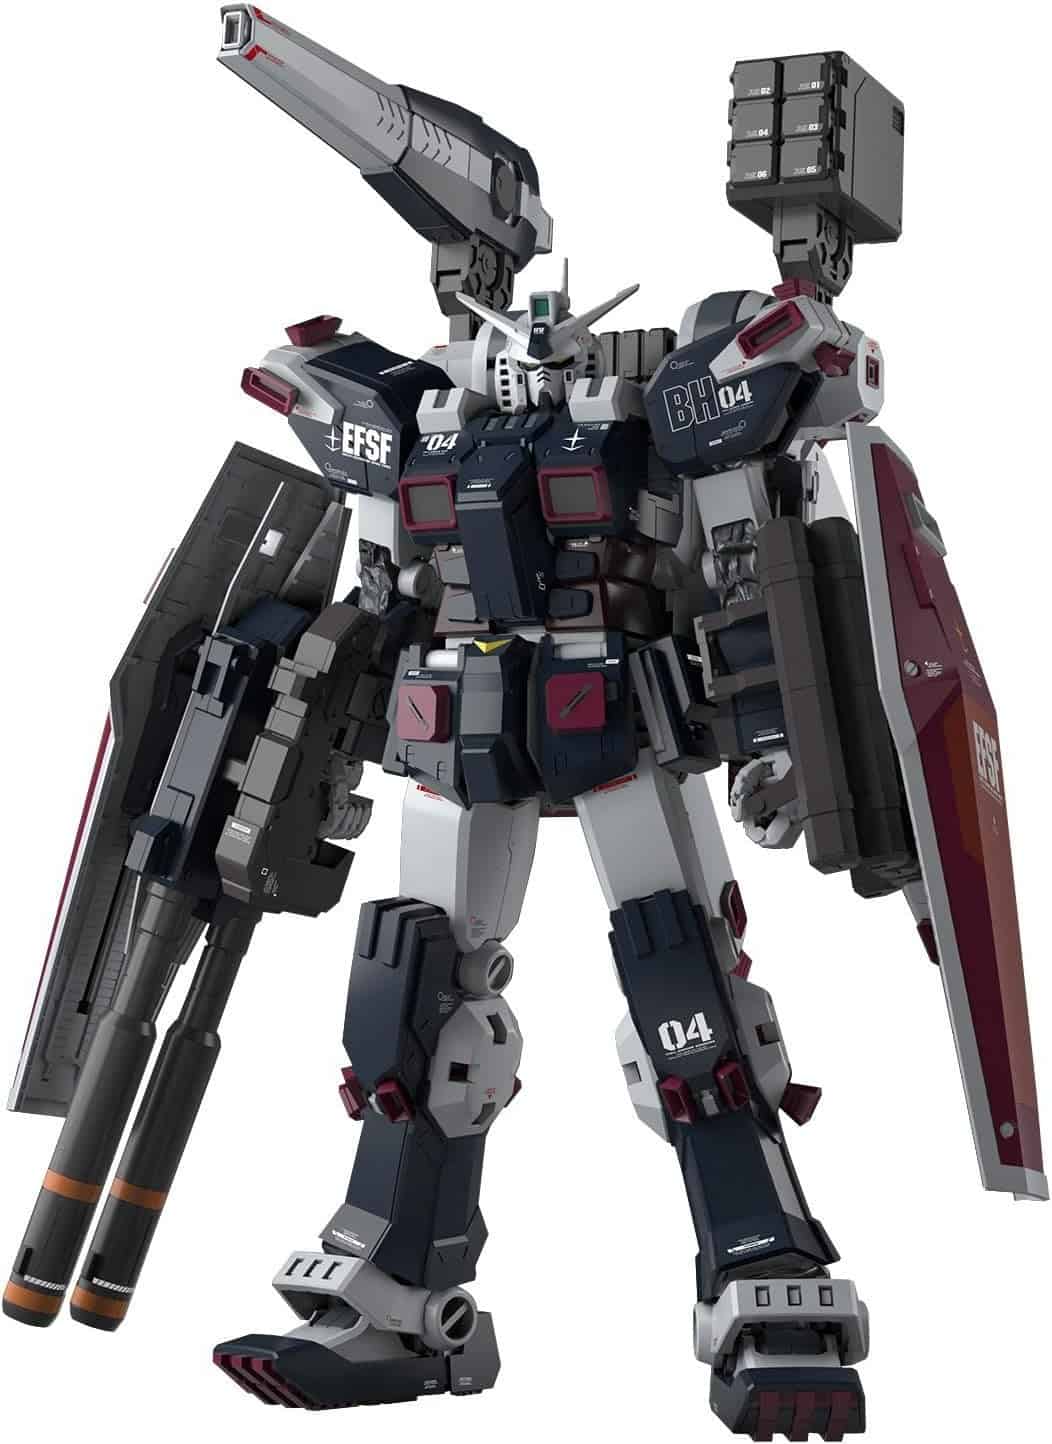 Bandai Hobby Master Grade Full Armor Gundam Thunderbolt Kit (1/100 Scale)